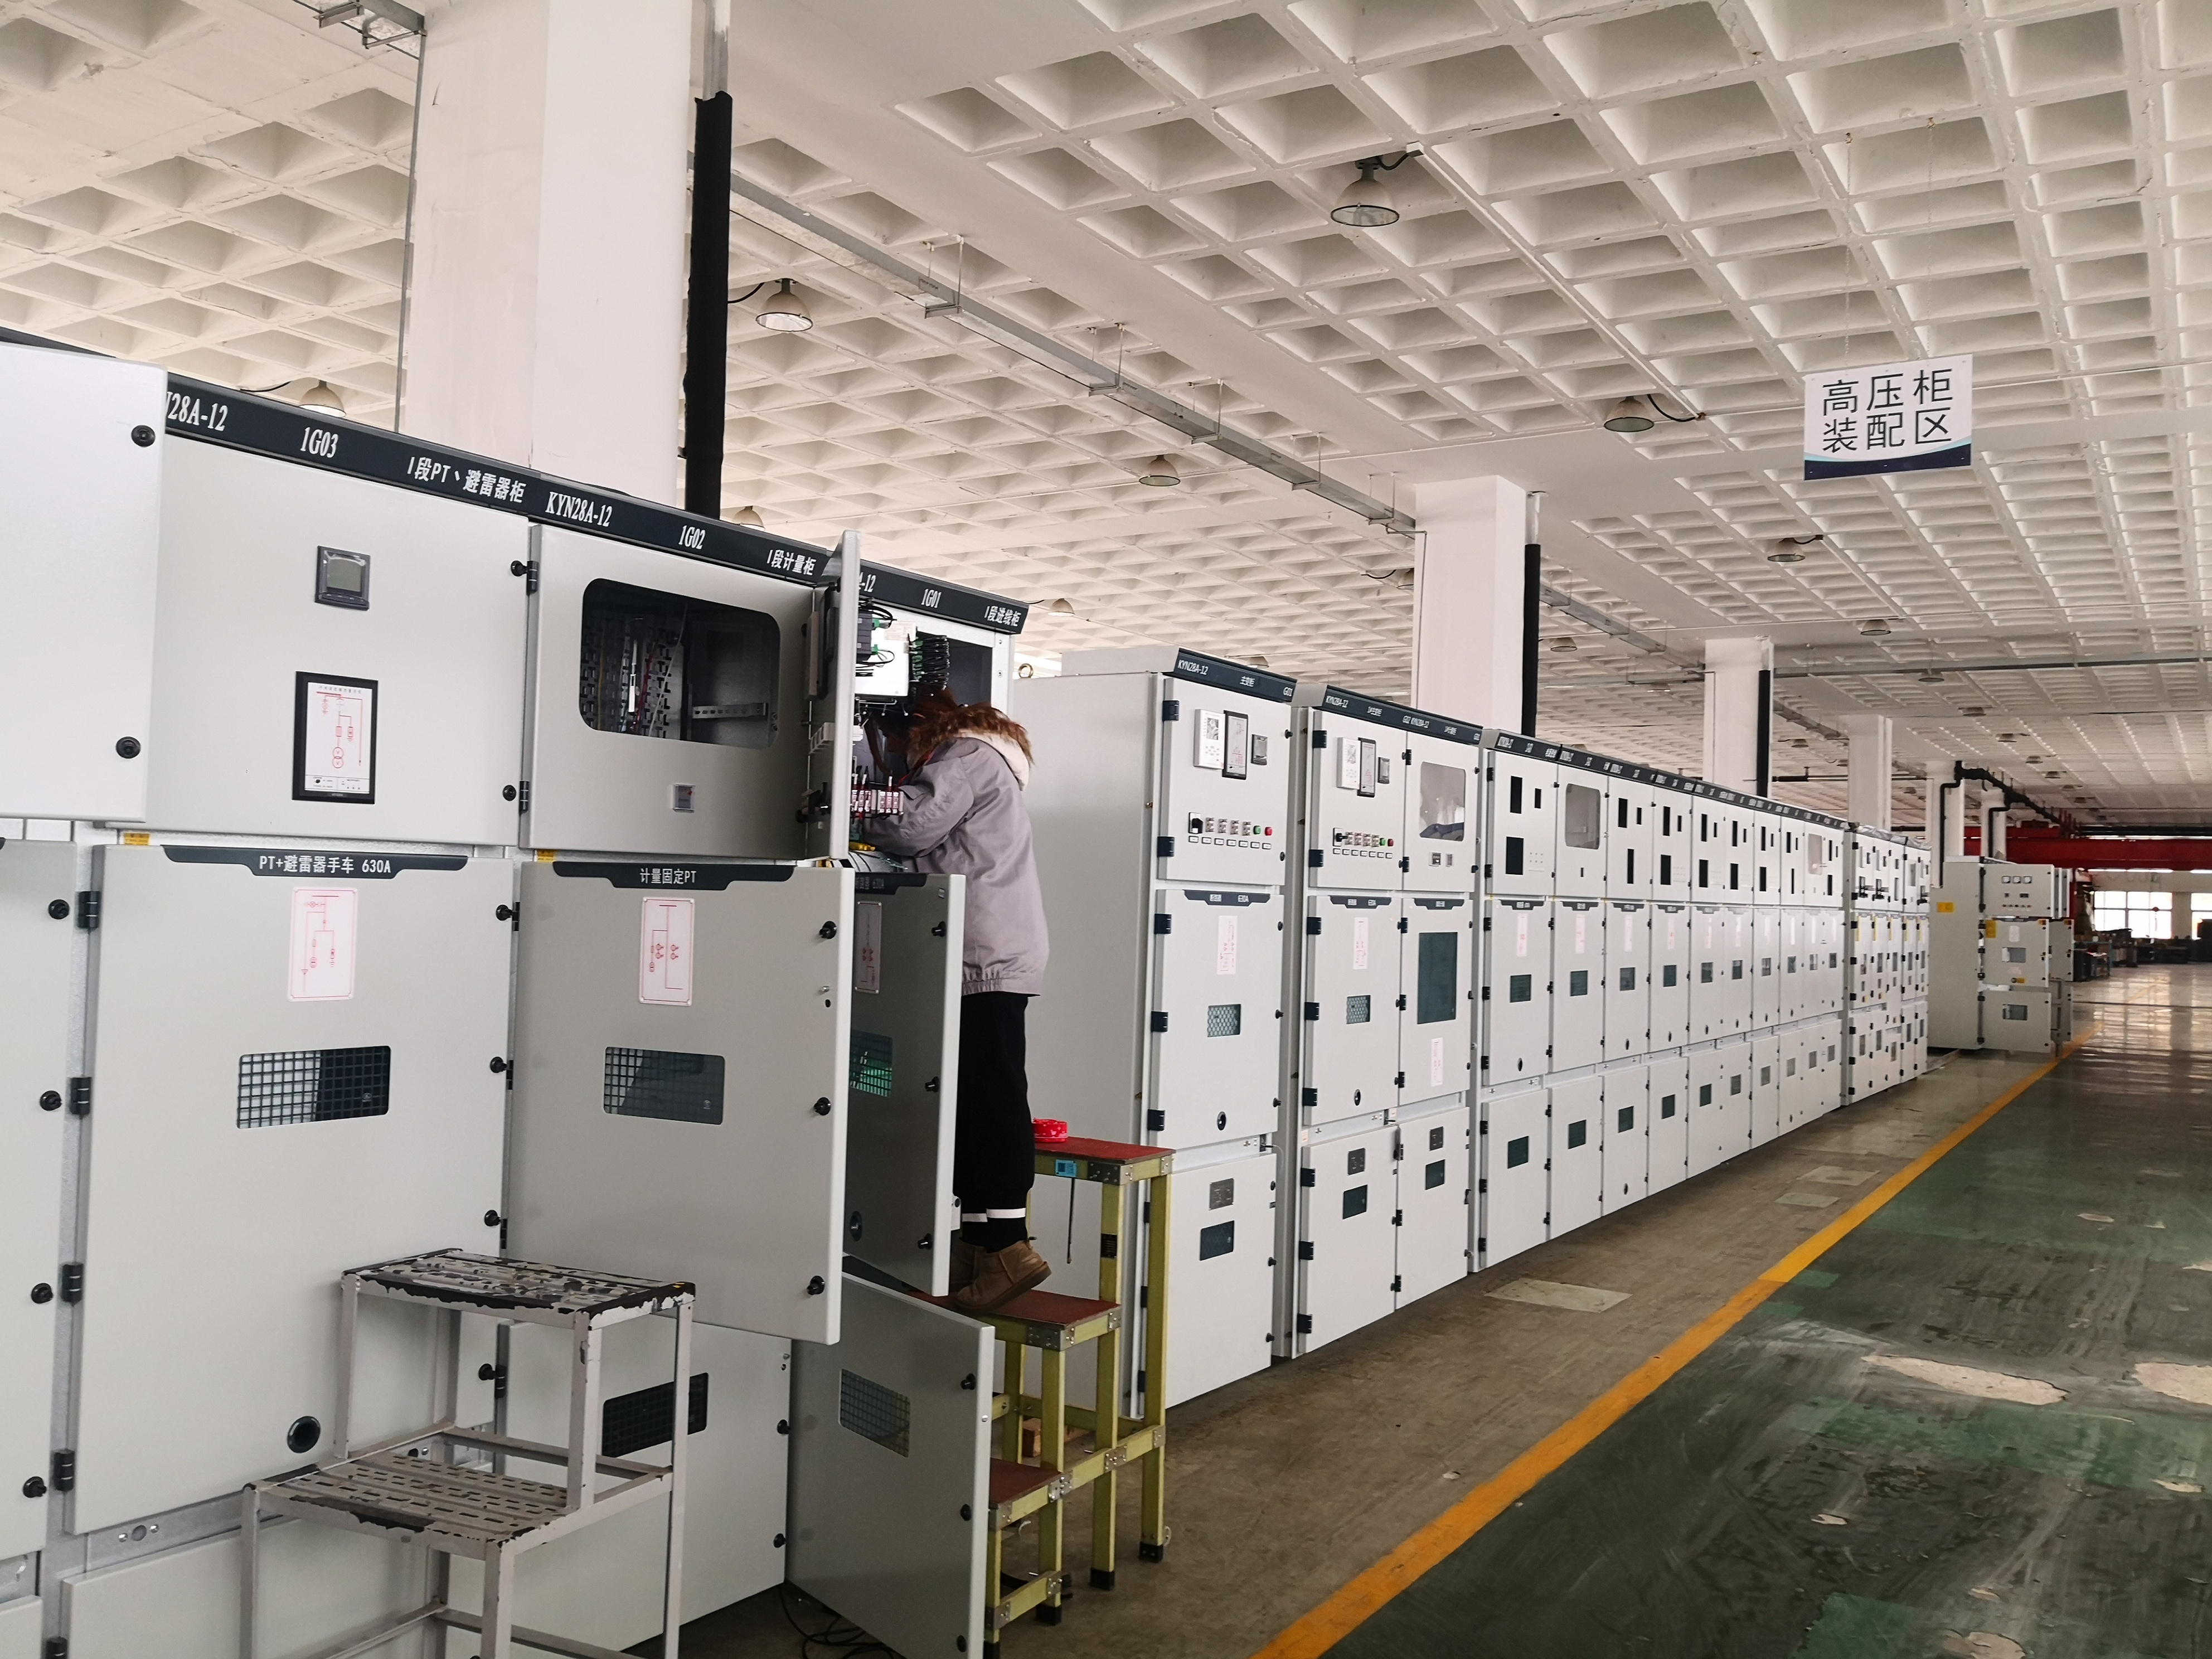 长江路街道辖区的企业开始复工复产，图为青岛金和宇通电气设备有限公司工作人员正在组装线路。